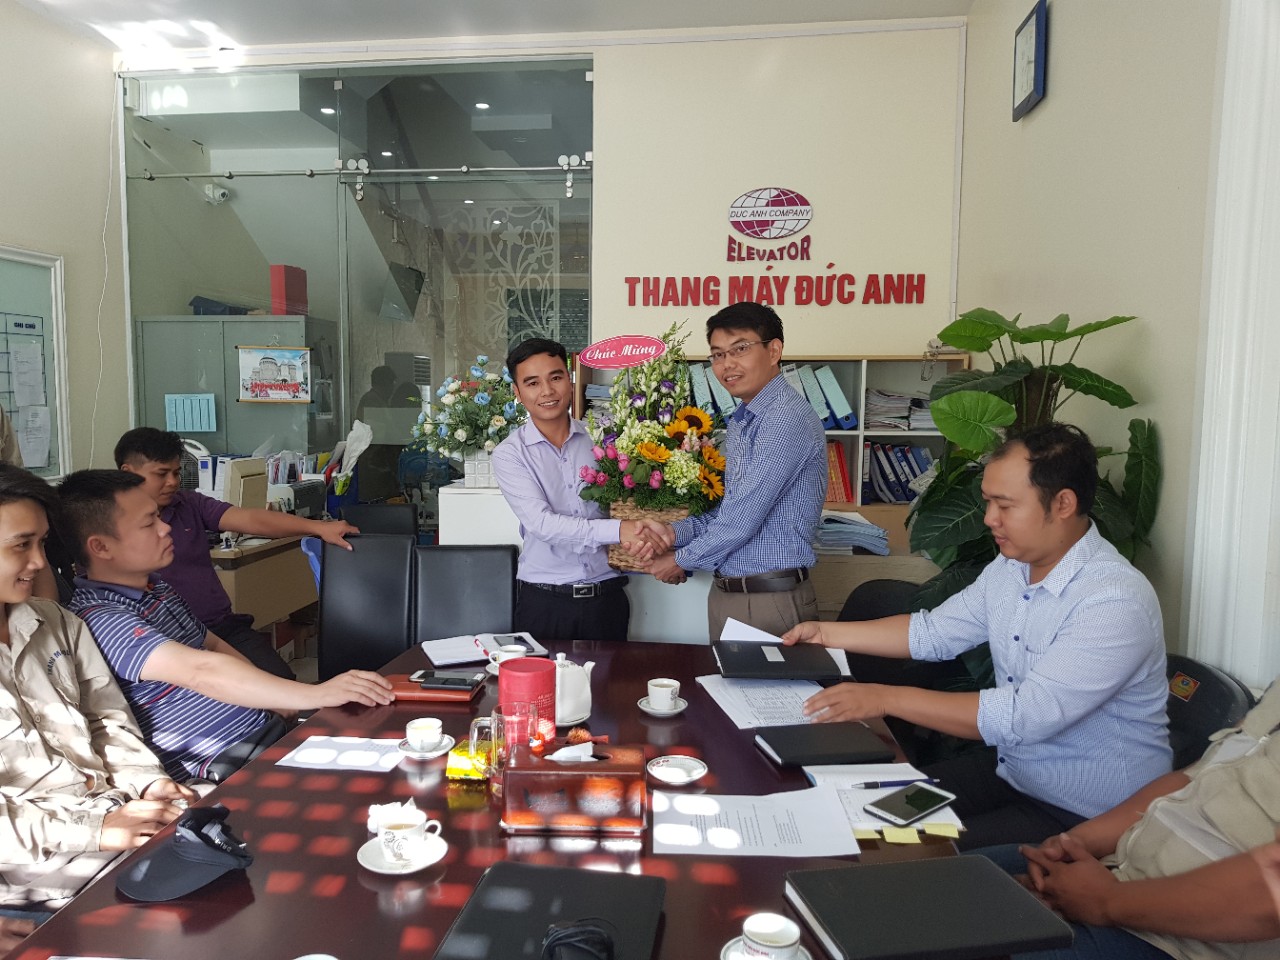 Bổ nhiệm ông Vũ Văn Trường – trưởng đại diện văn phòng Thái Bình làm PGĐ kinh doanh.